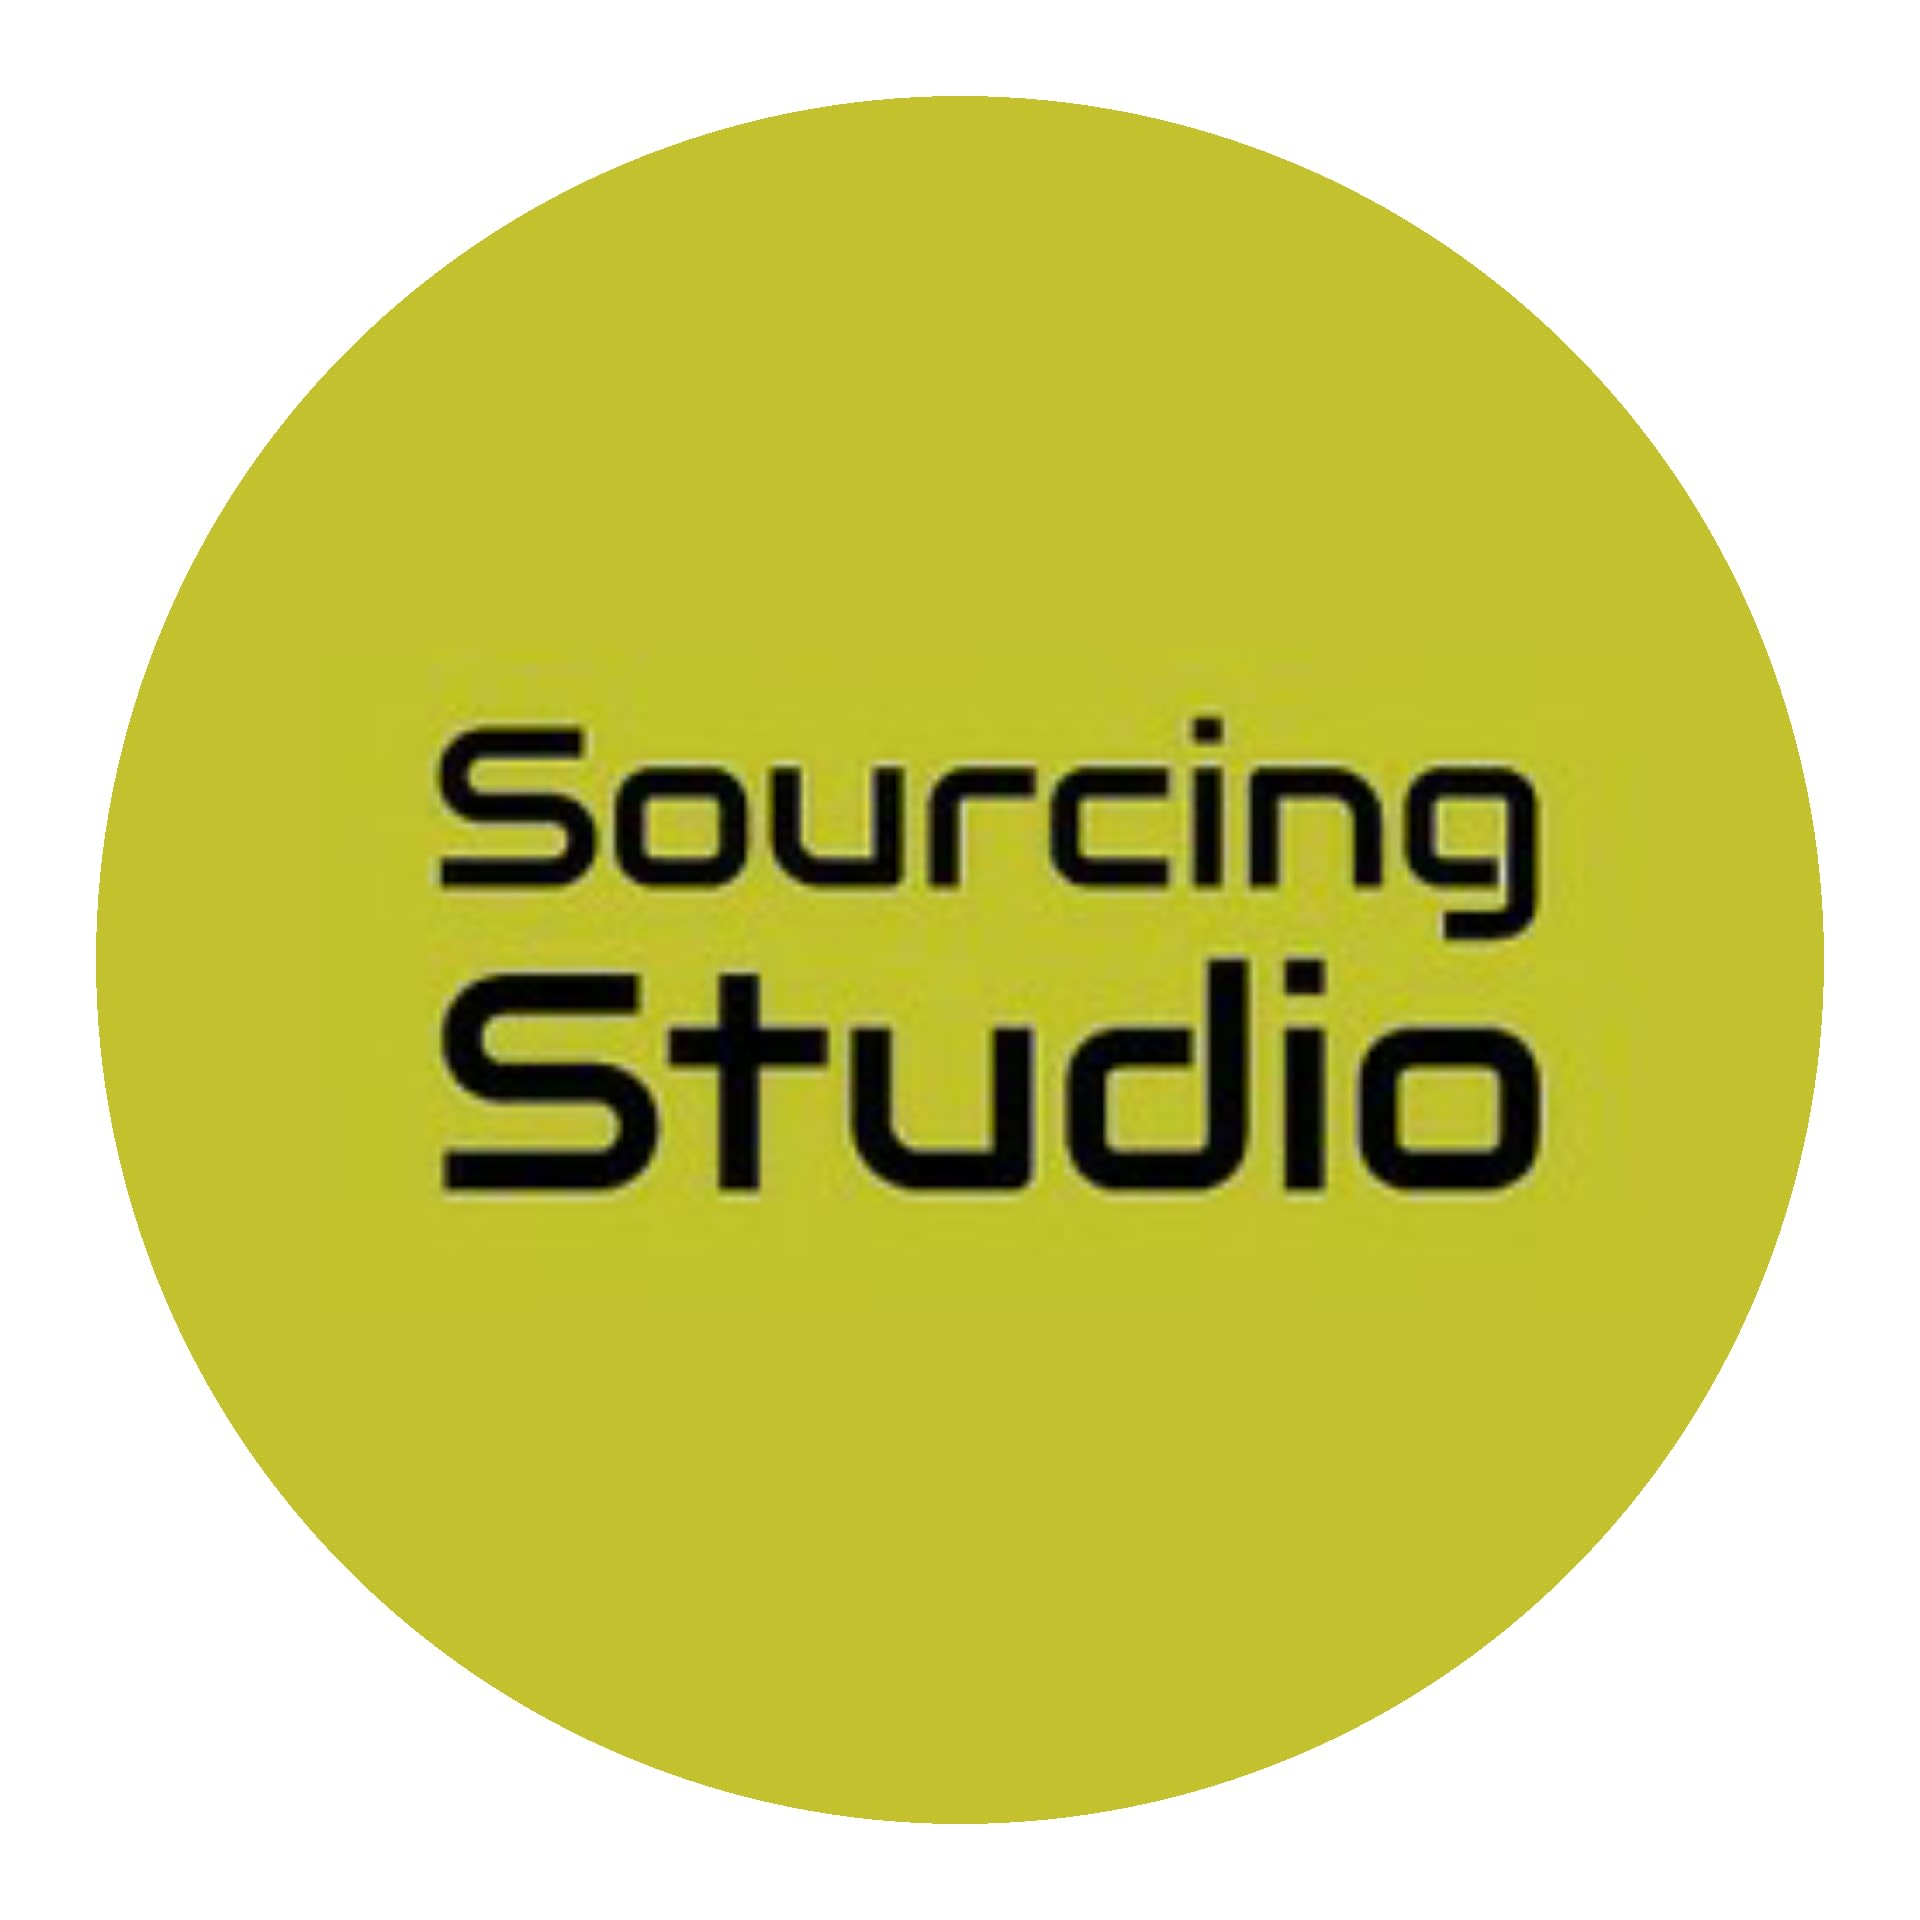 Sourcing Studio